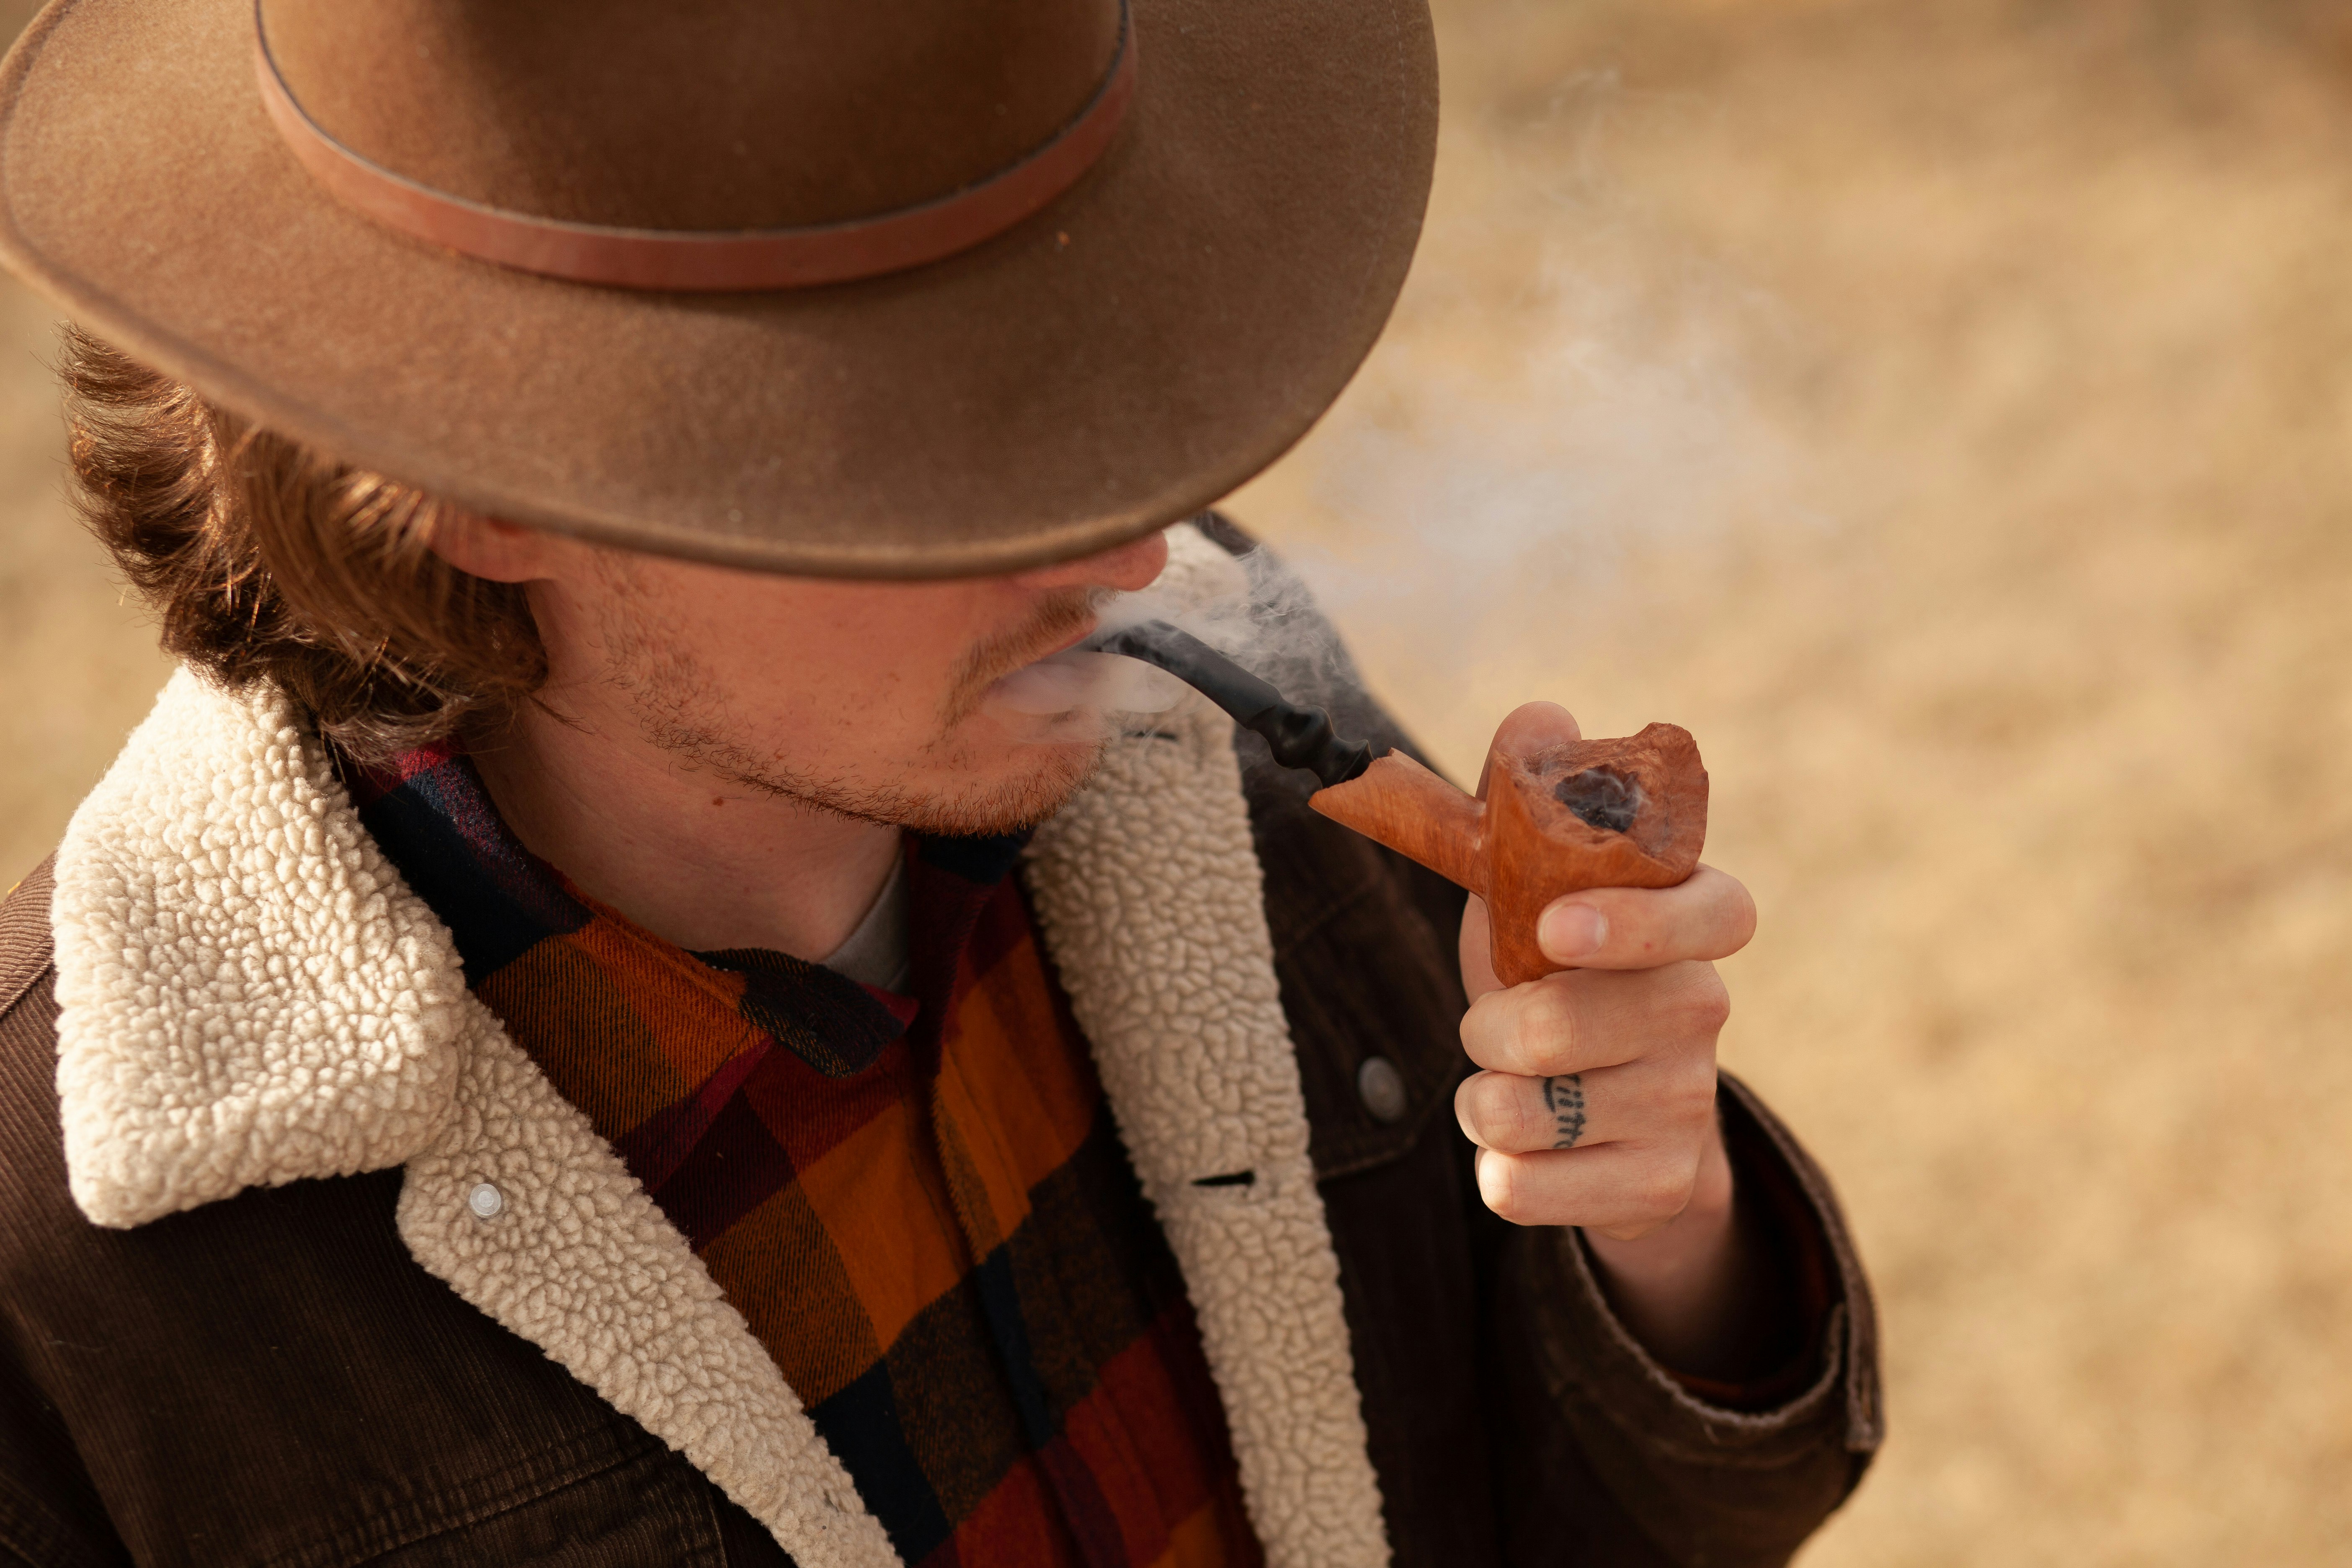 man wearing brown hat and jacket smoking tobacco pipe